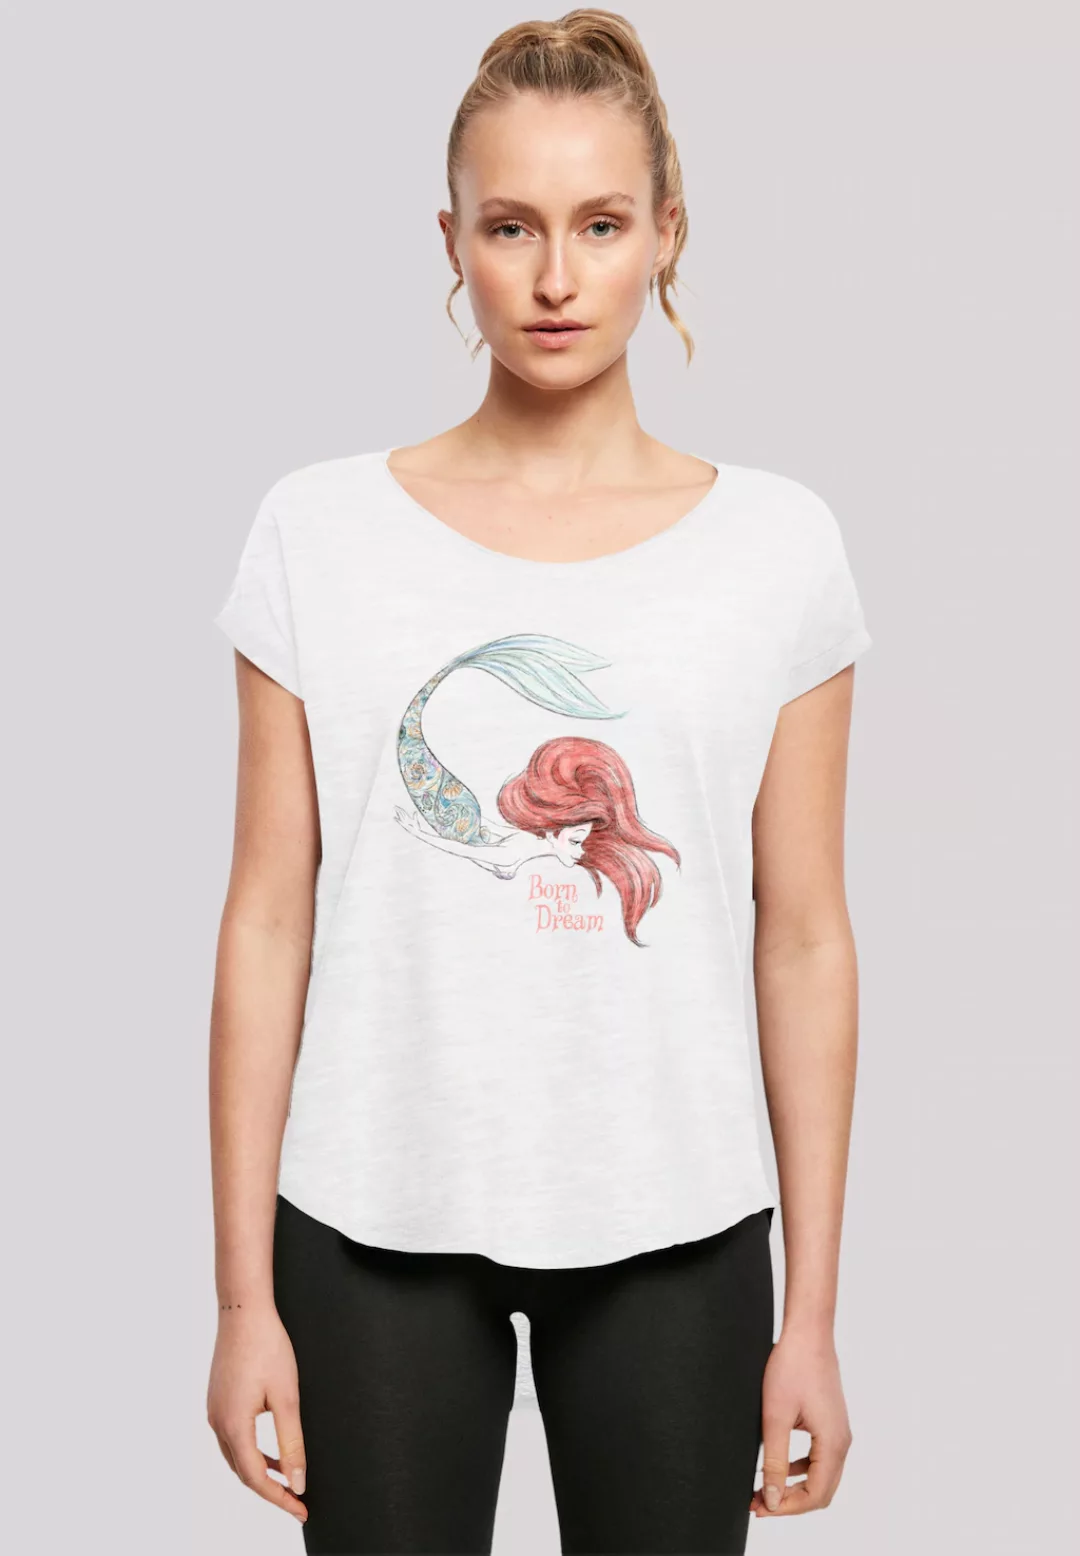 F4NT4STIC T-Shirt "Disney Arielle die Meerjungfrau Born To Dream", Premium günstig online kaufen